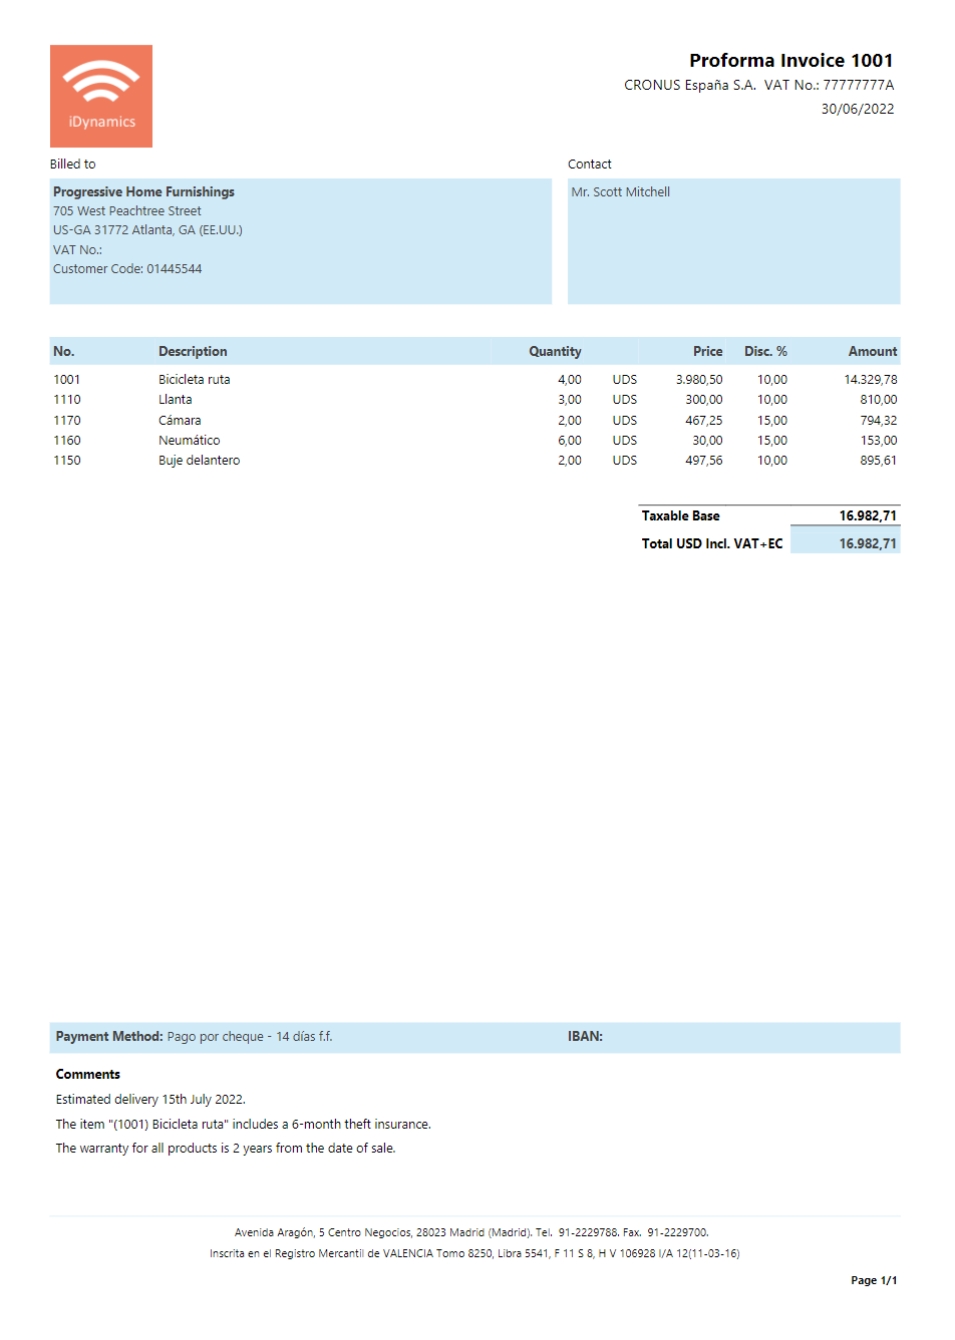 Example of proforma invoice